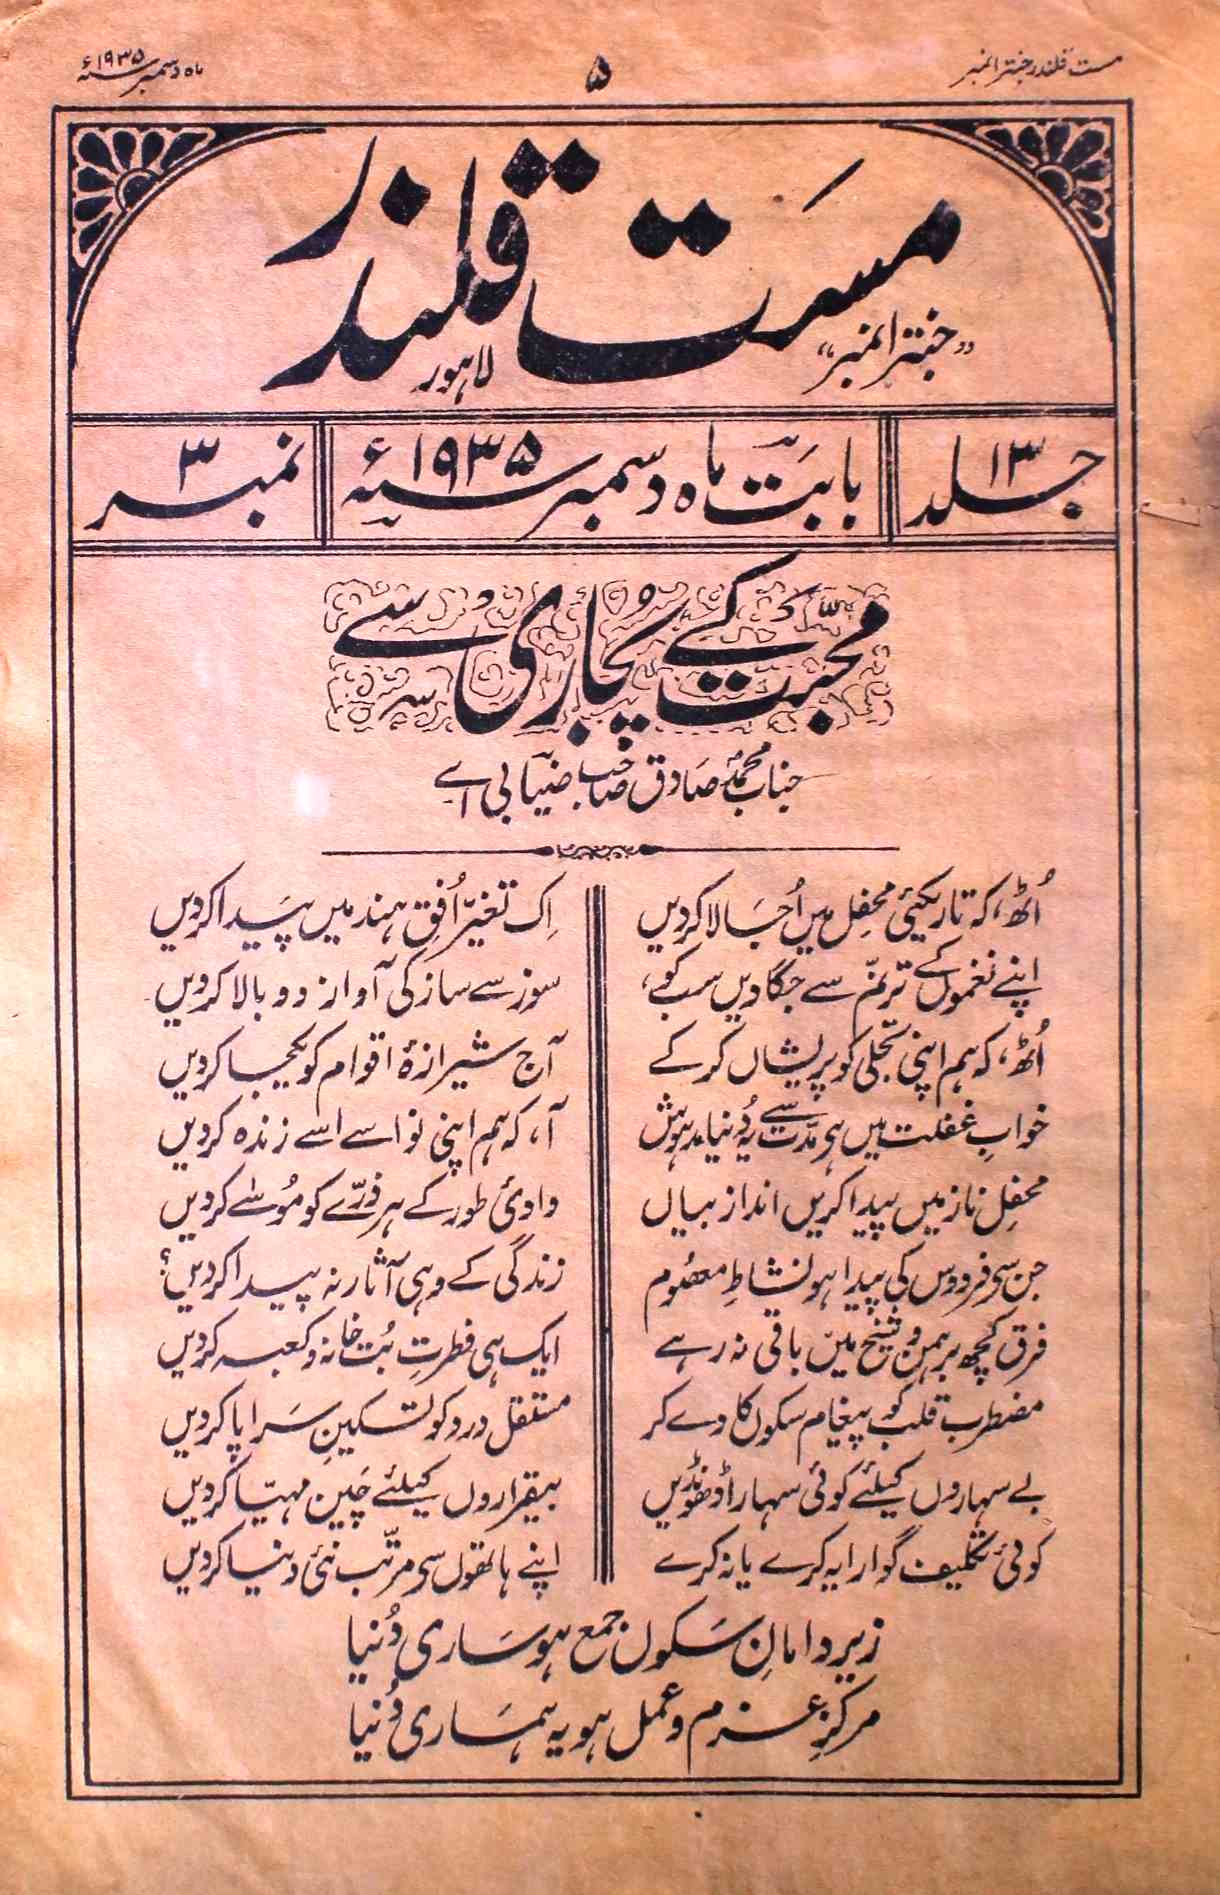 Mast Qalandar Jild 13 No 3 December 1935-SVK